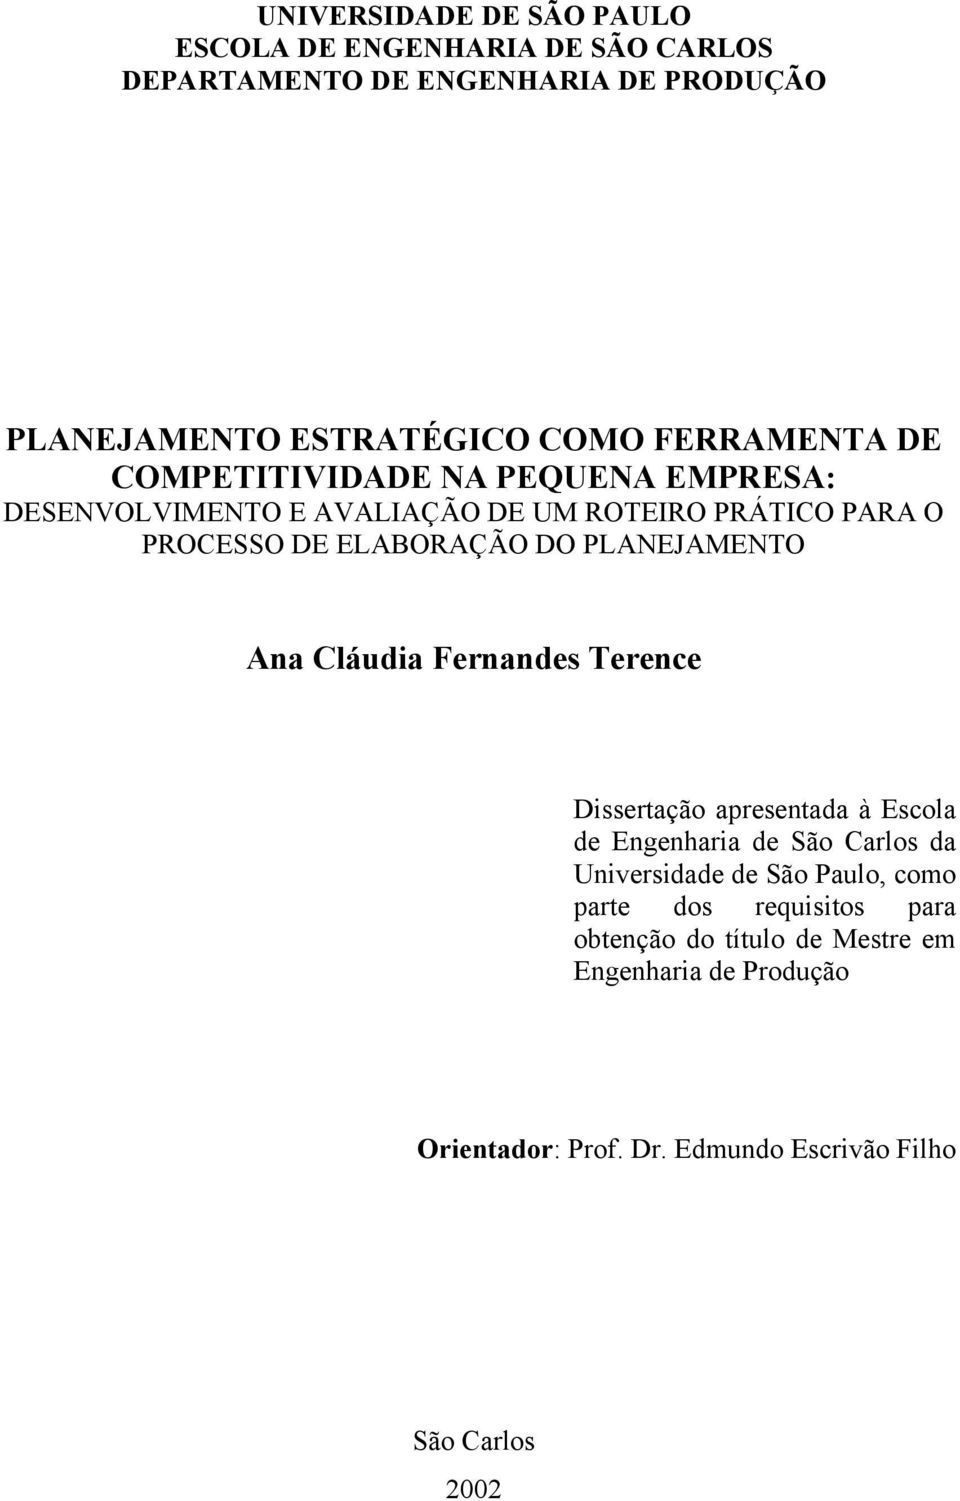 PLANEJAMENTO Ana Cláudia Fernandes Terence Dissertação apresentada à Escola de Engenharia de São Carlos da Universidade de São Paulo,